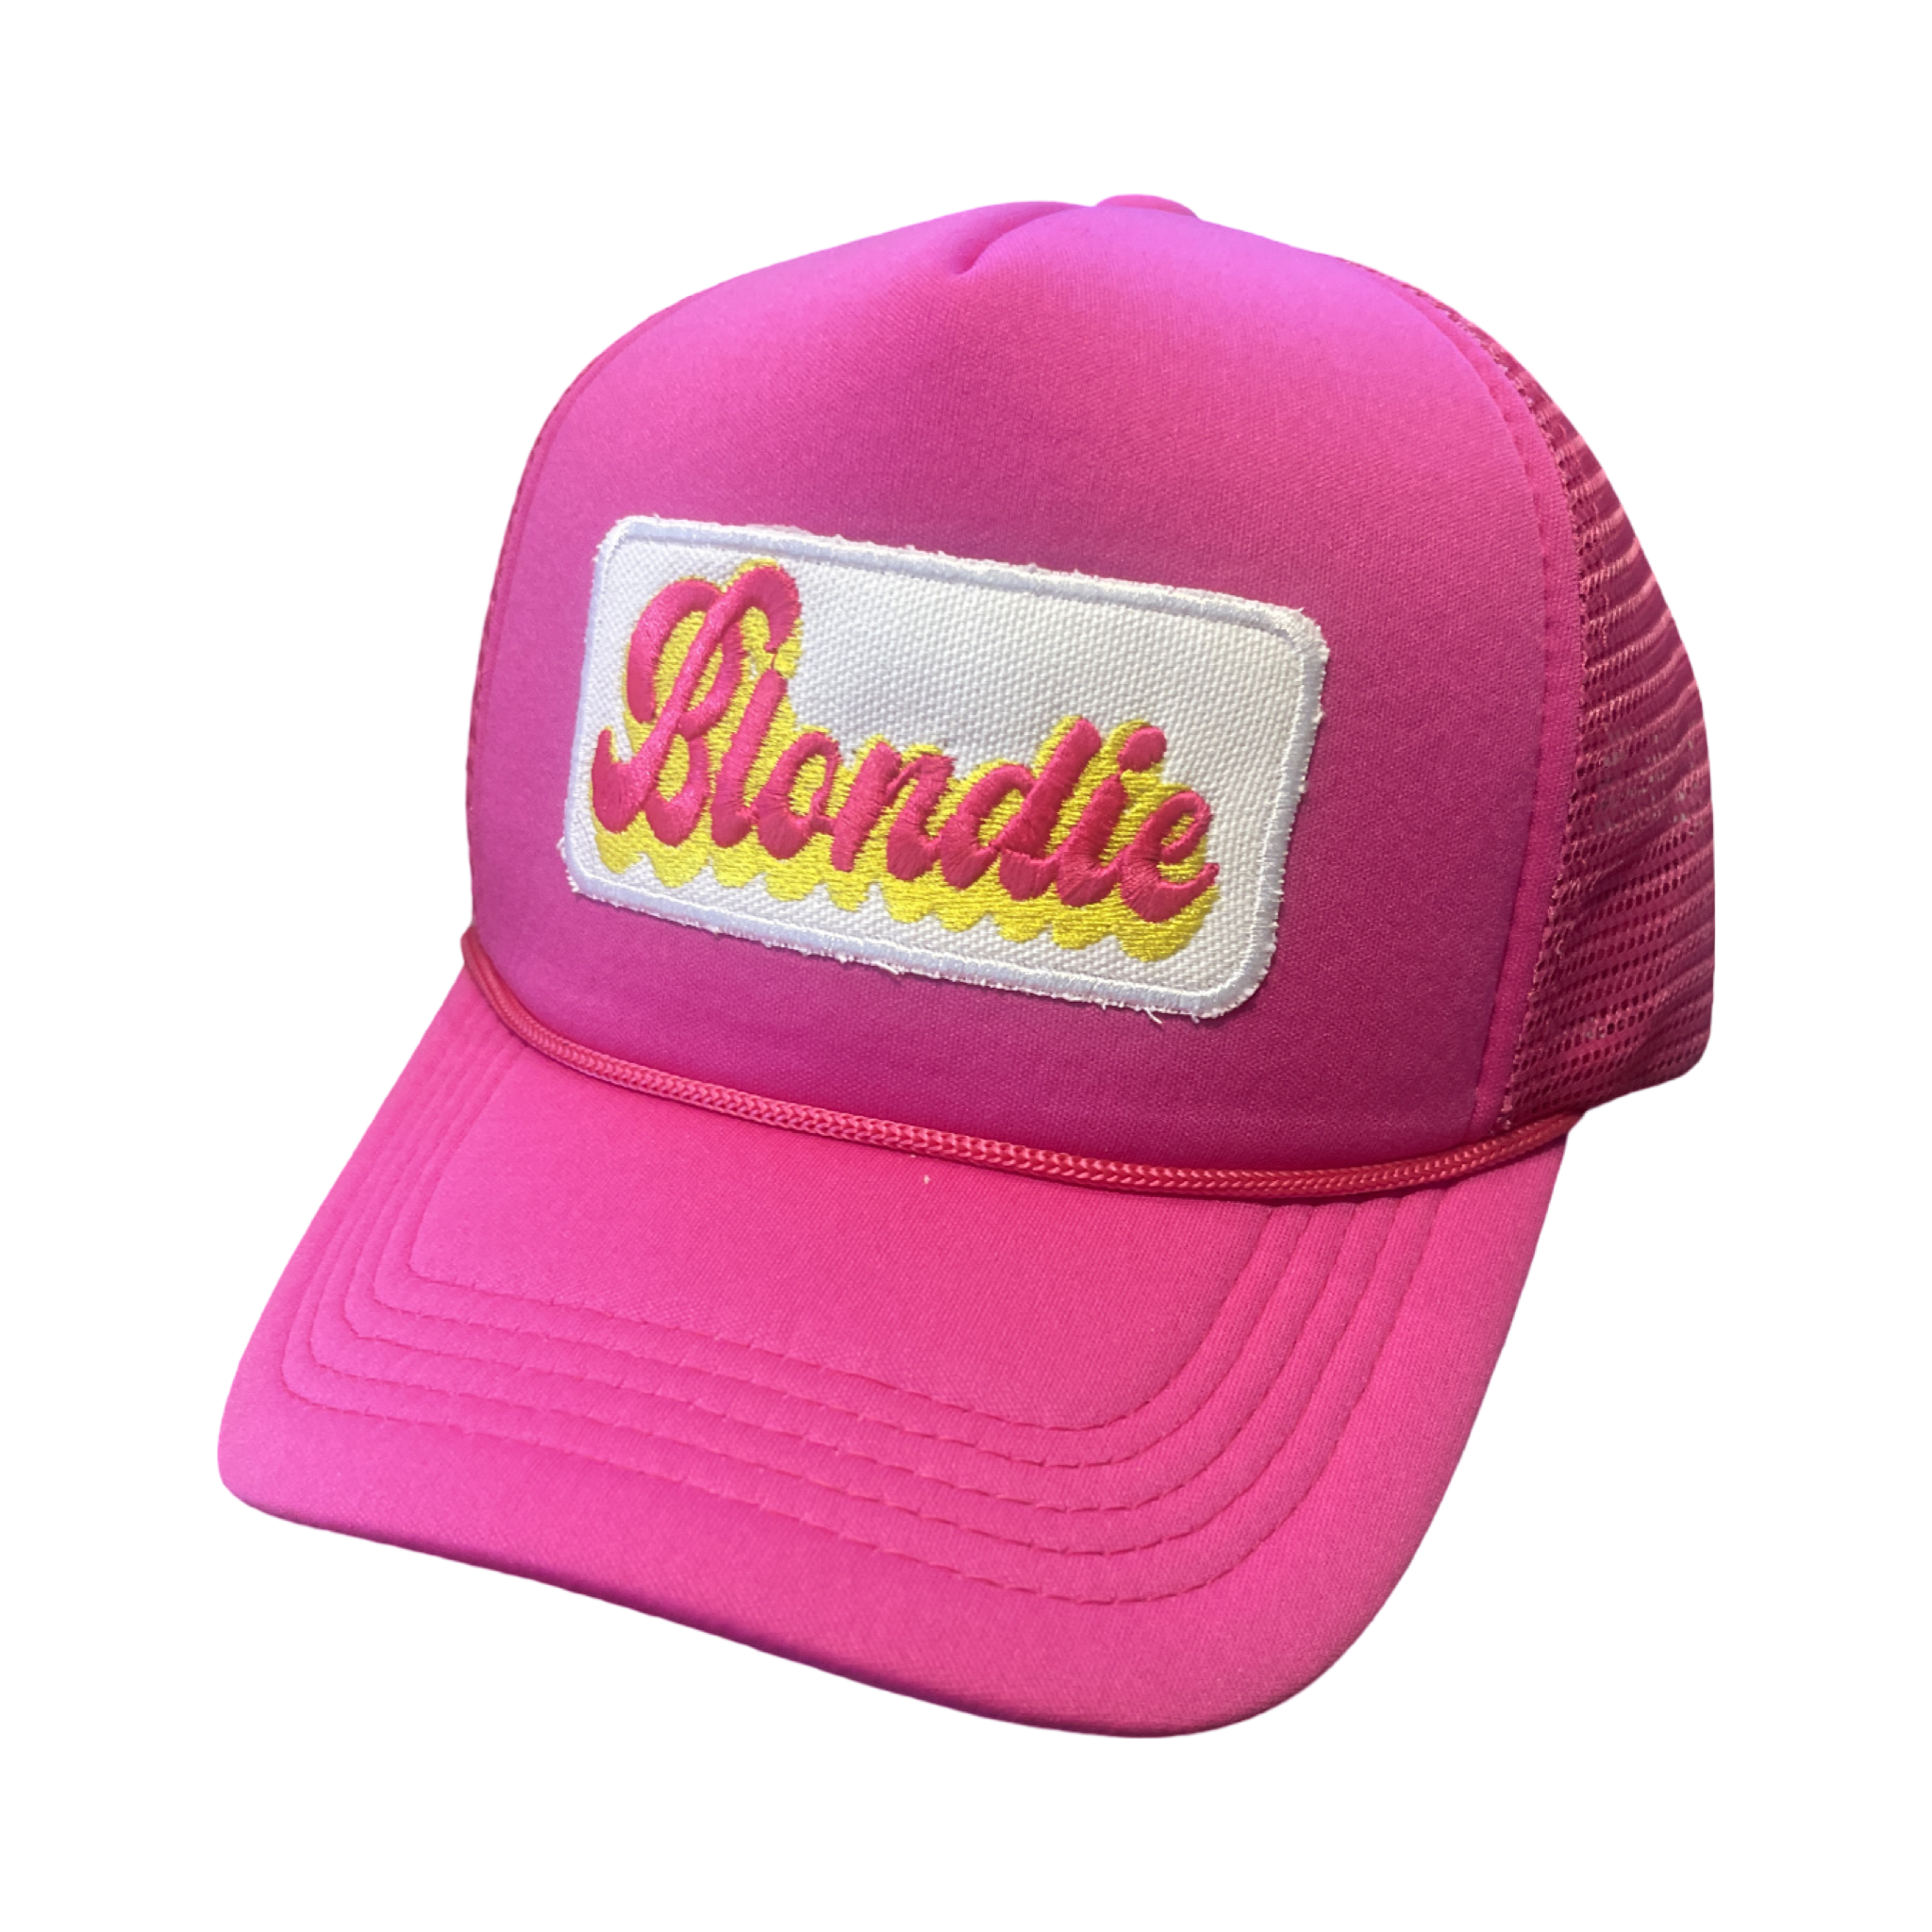 Trucker Hat Foam "Blondie"